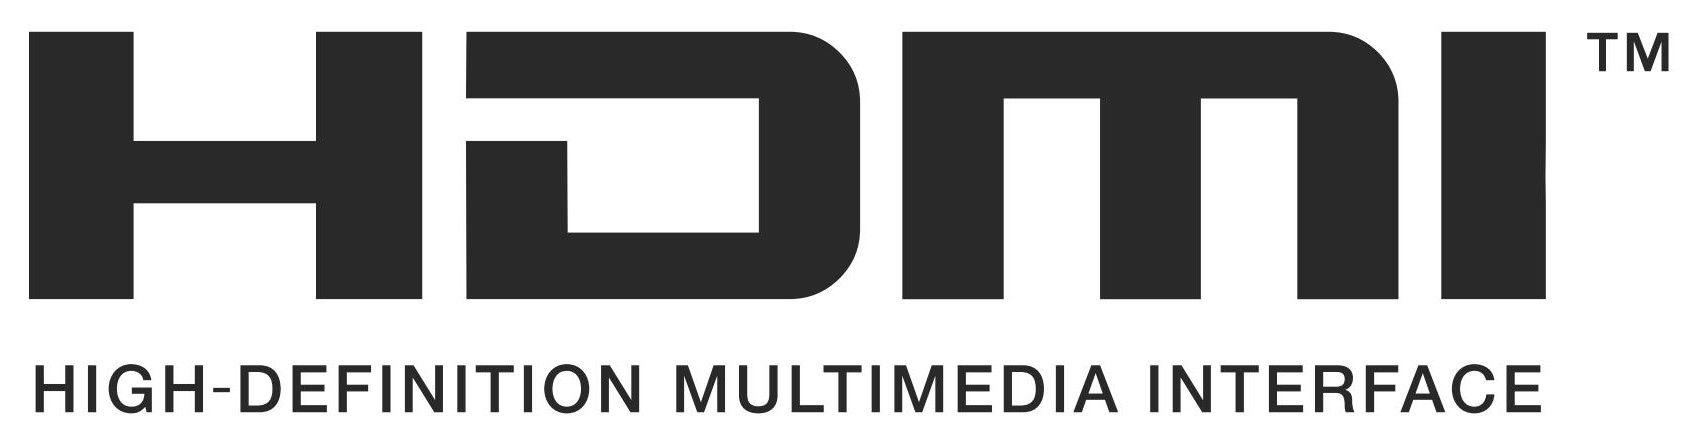 HDMI Logo - hdmi-logo - Gallery Digital Signage